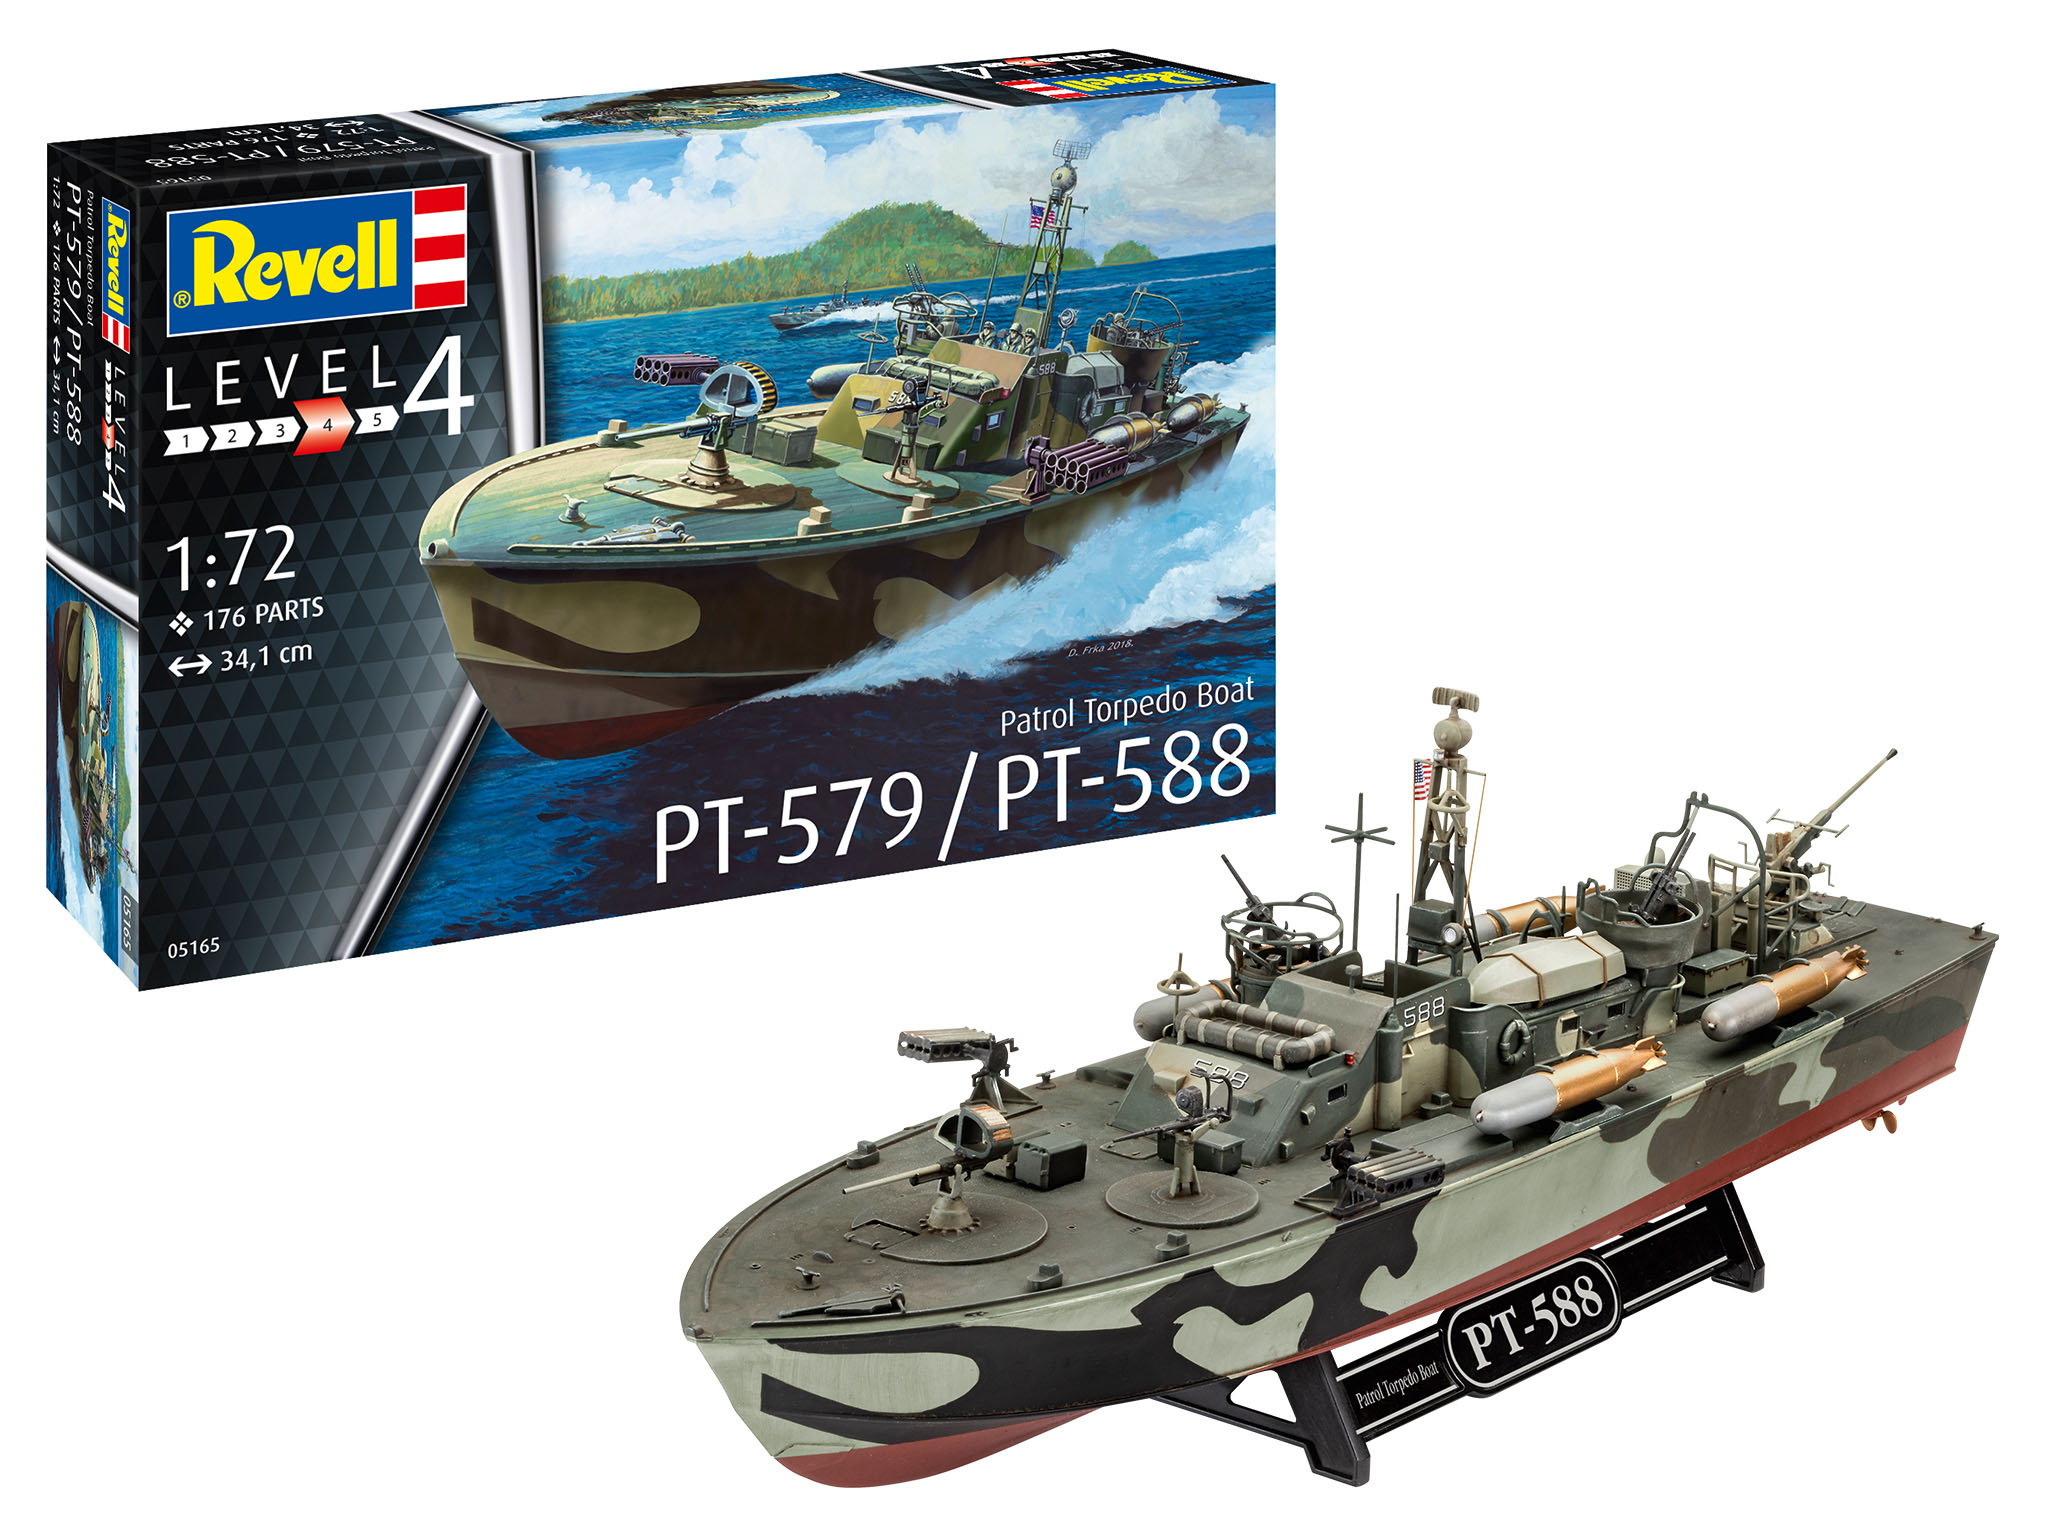 revell-05165-Patrol-Torpedo-Boat-PT-579-PT-588